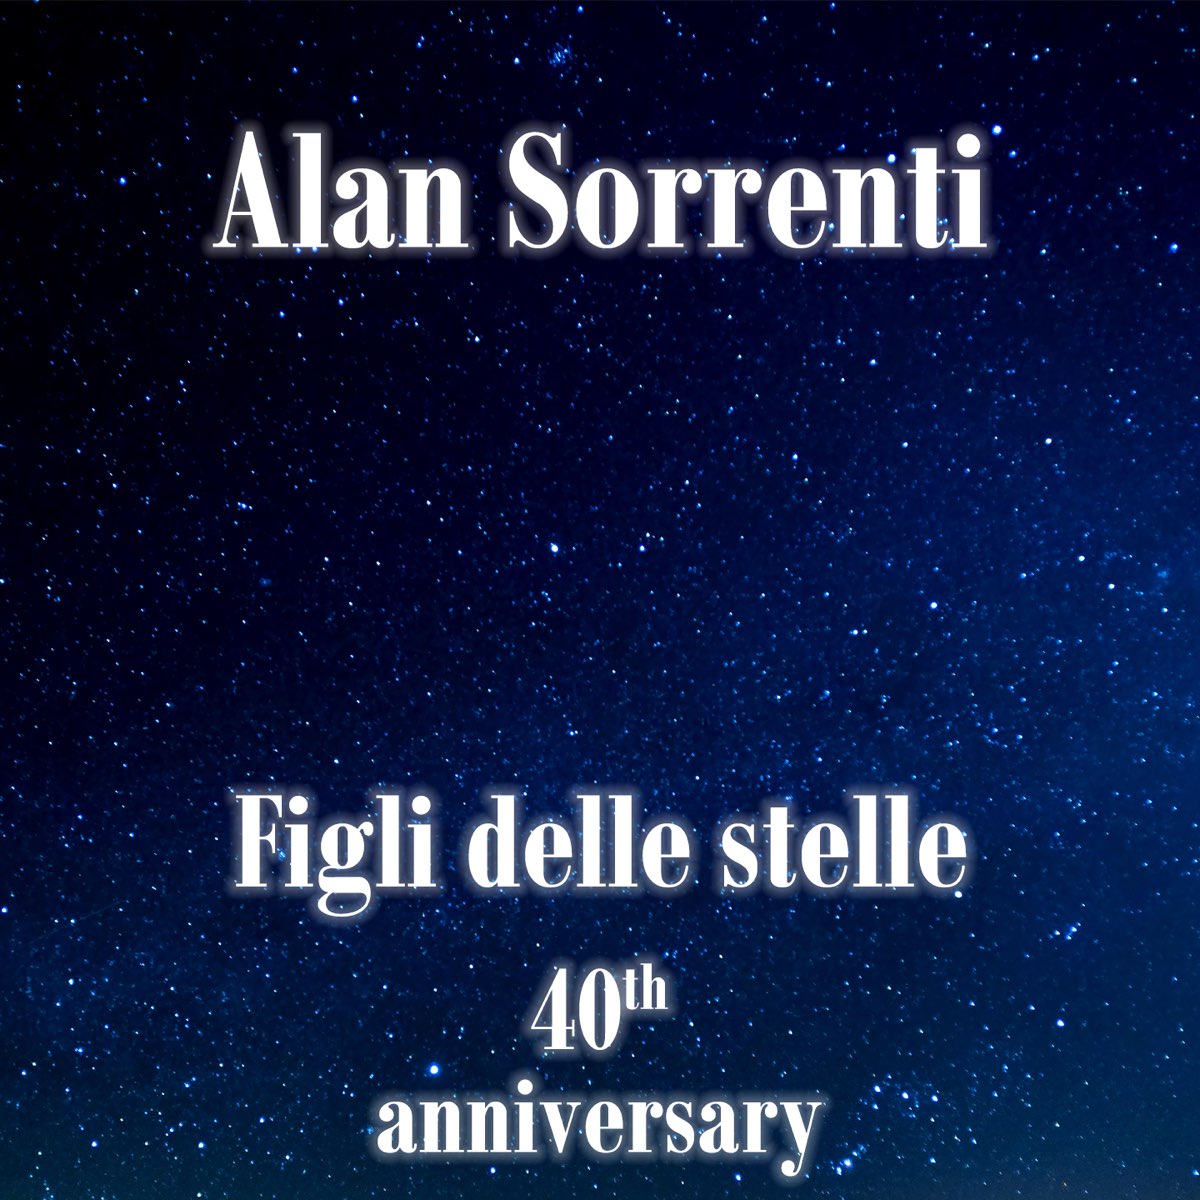 Figli delle stelle (40th anniversary) - Album by Alan Sorrenti - Apple Music